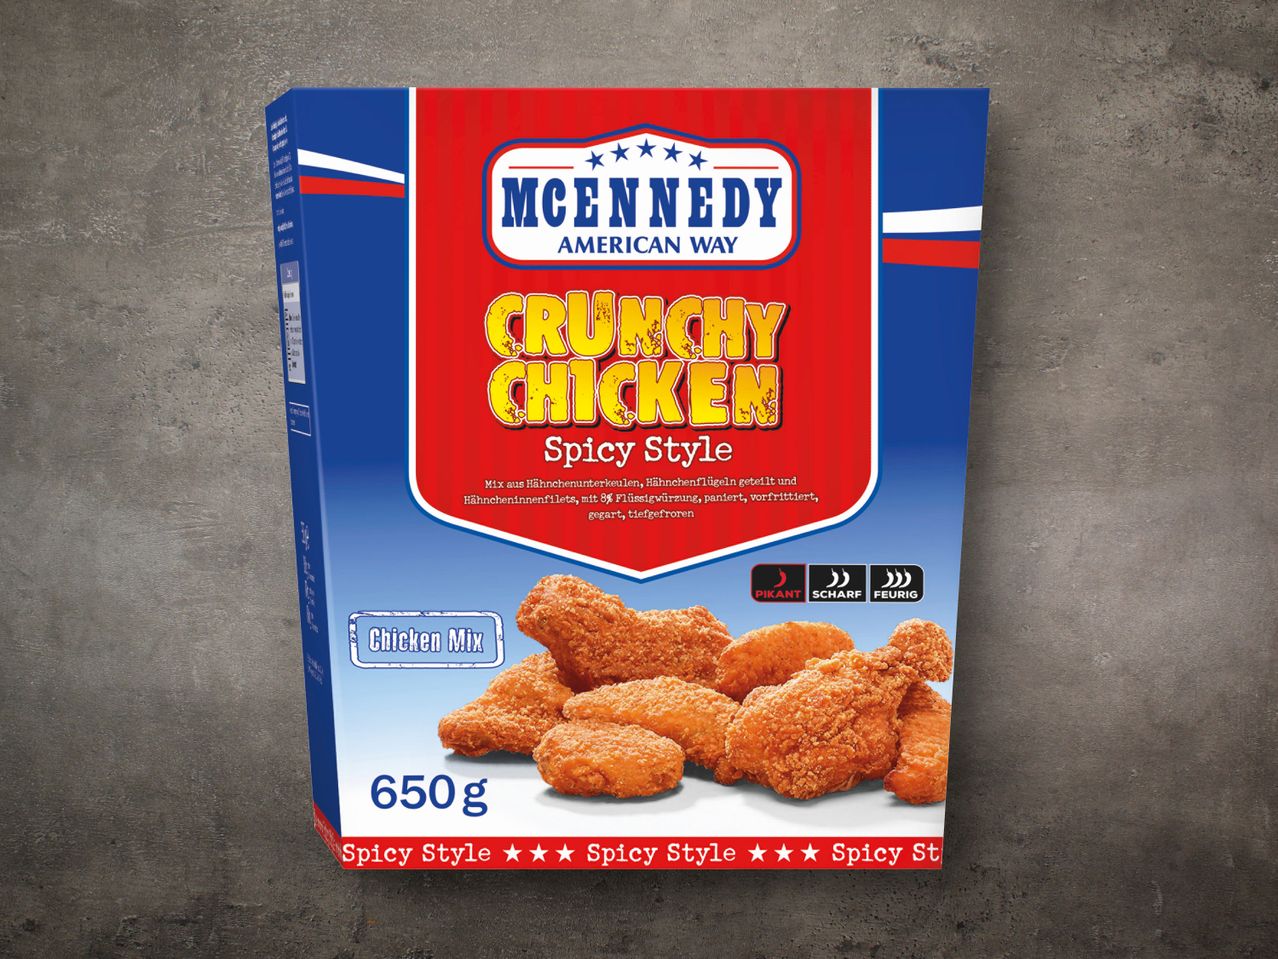 McEnnedy Chicken Bucket Crunchy